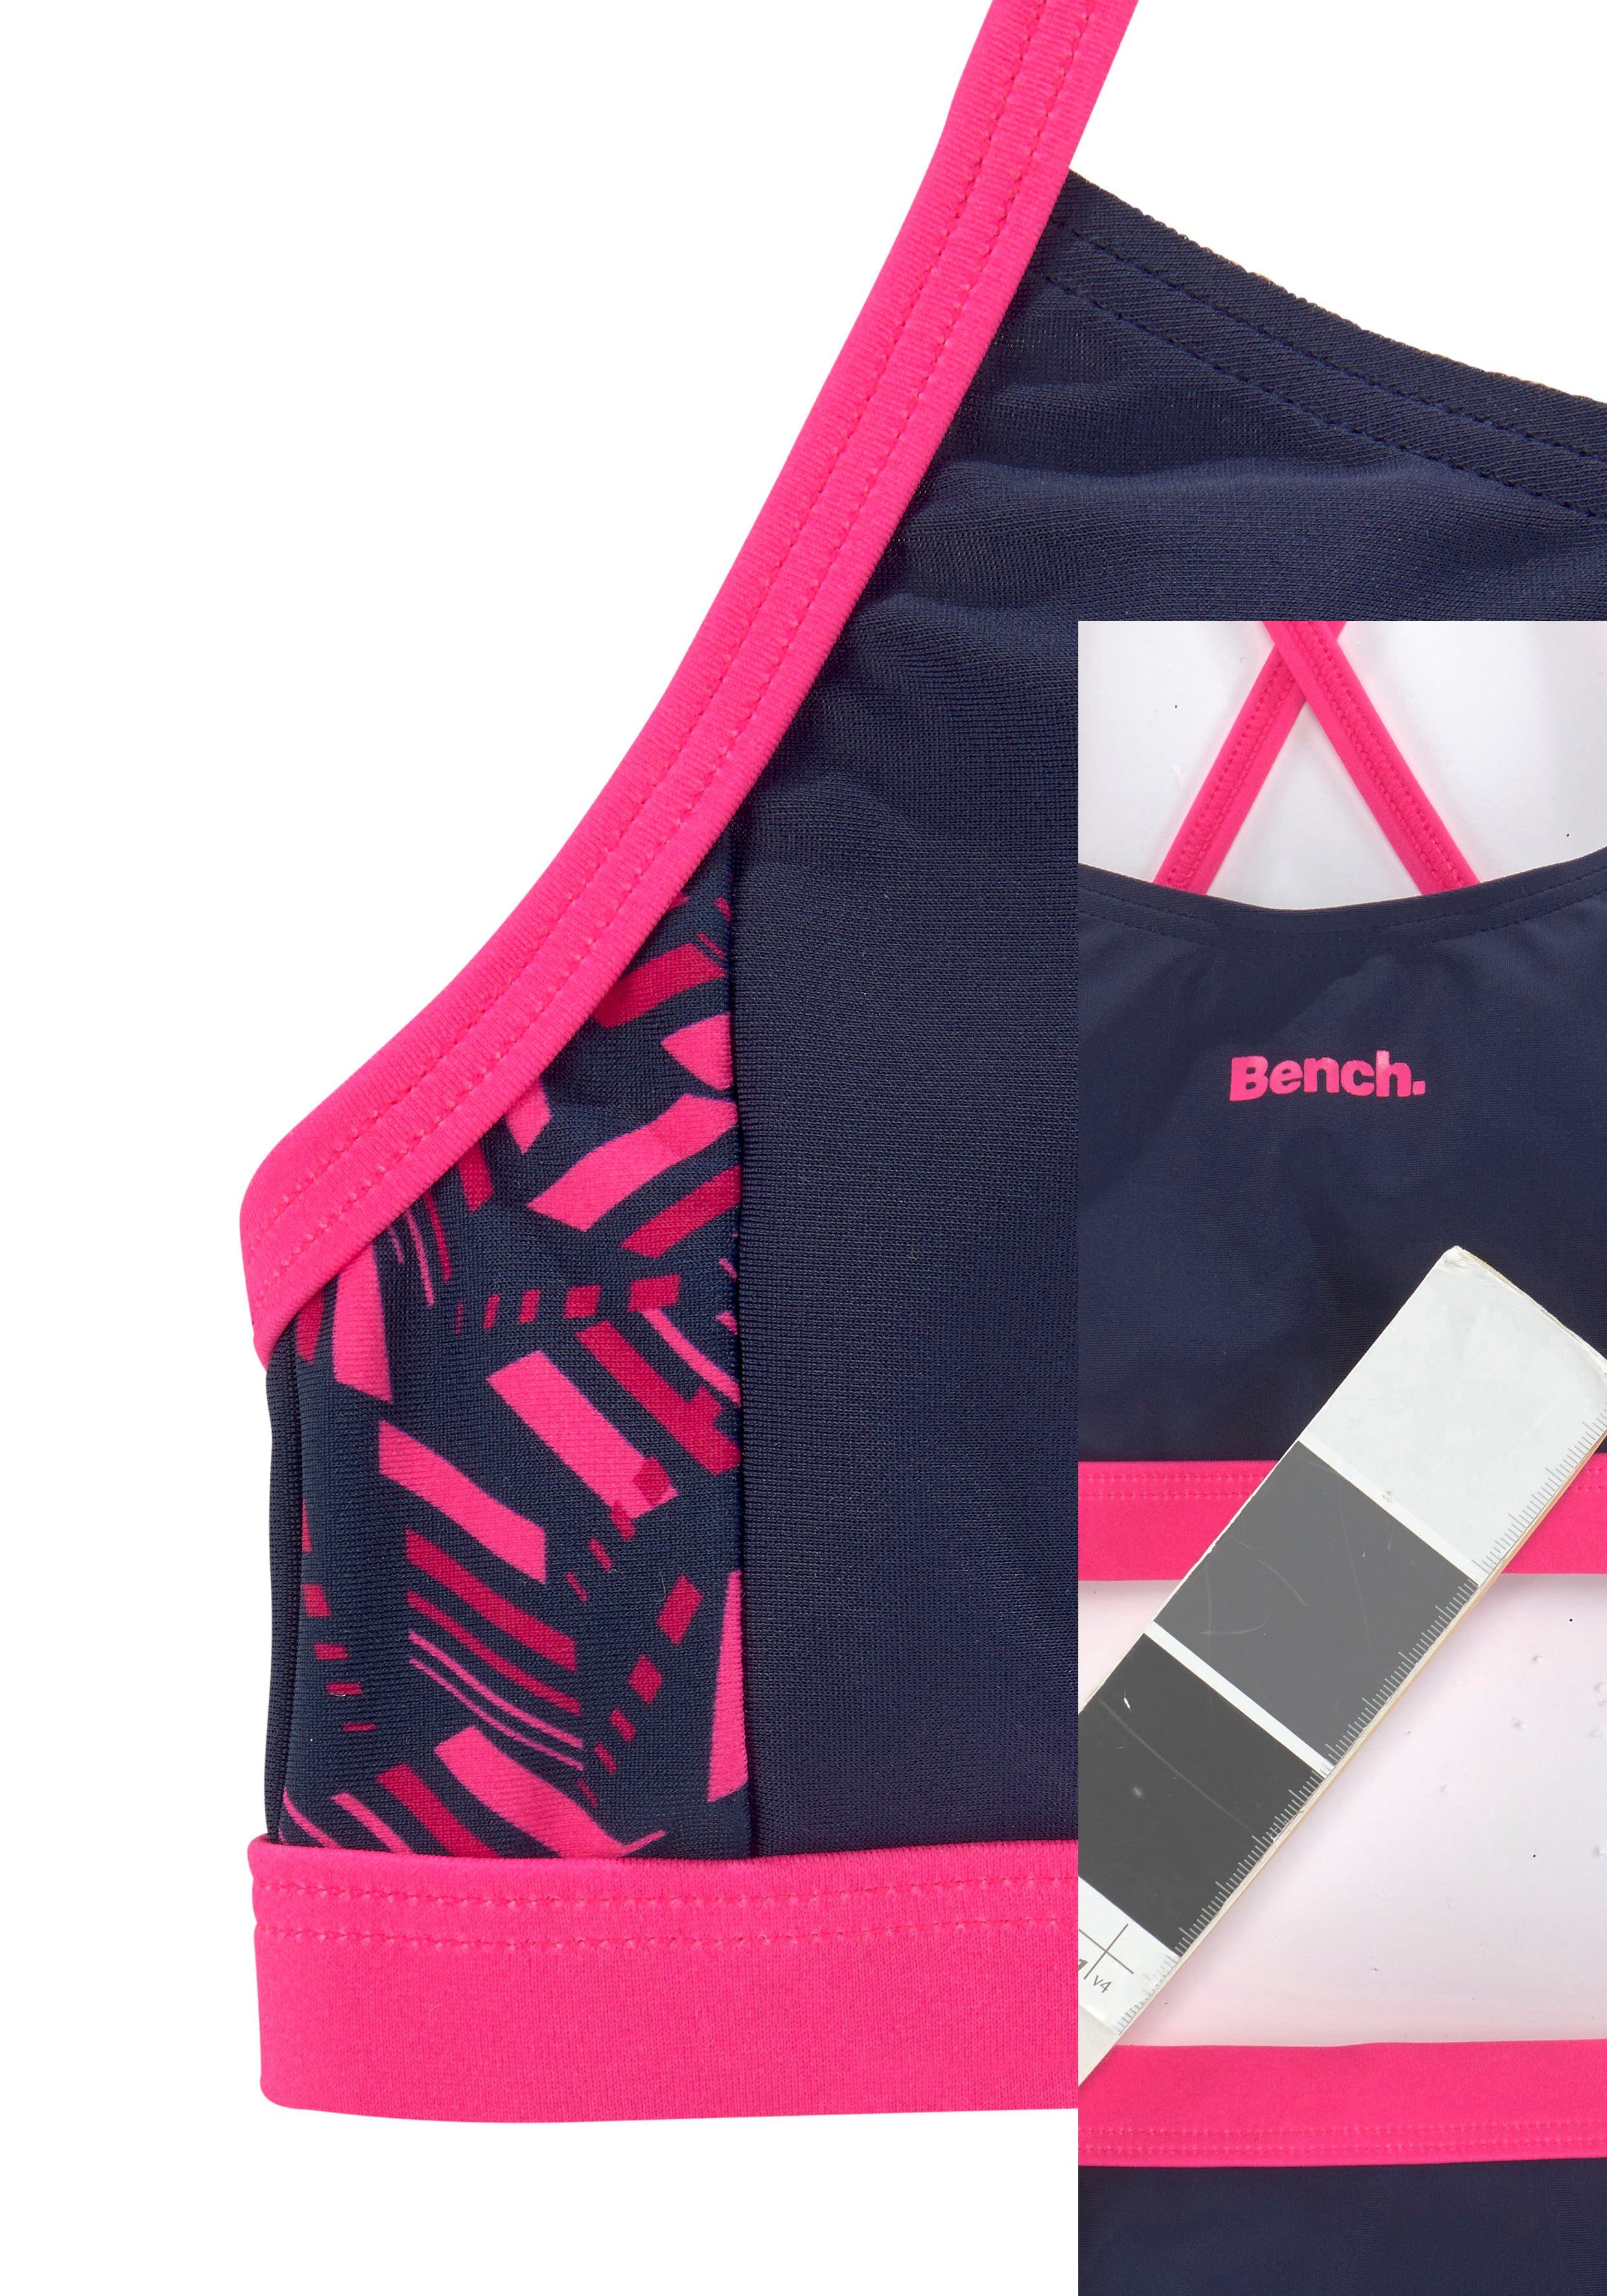 Bench. Bustier-Bikini bedruckten mit Einsätzen geometrische pink-marine